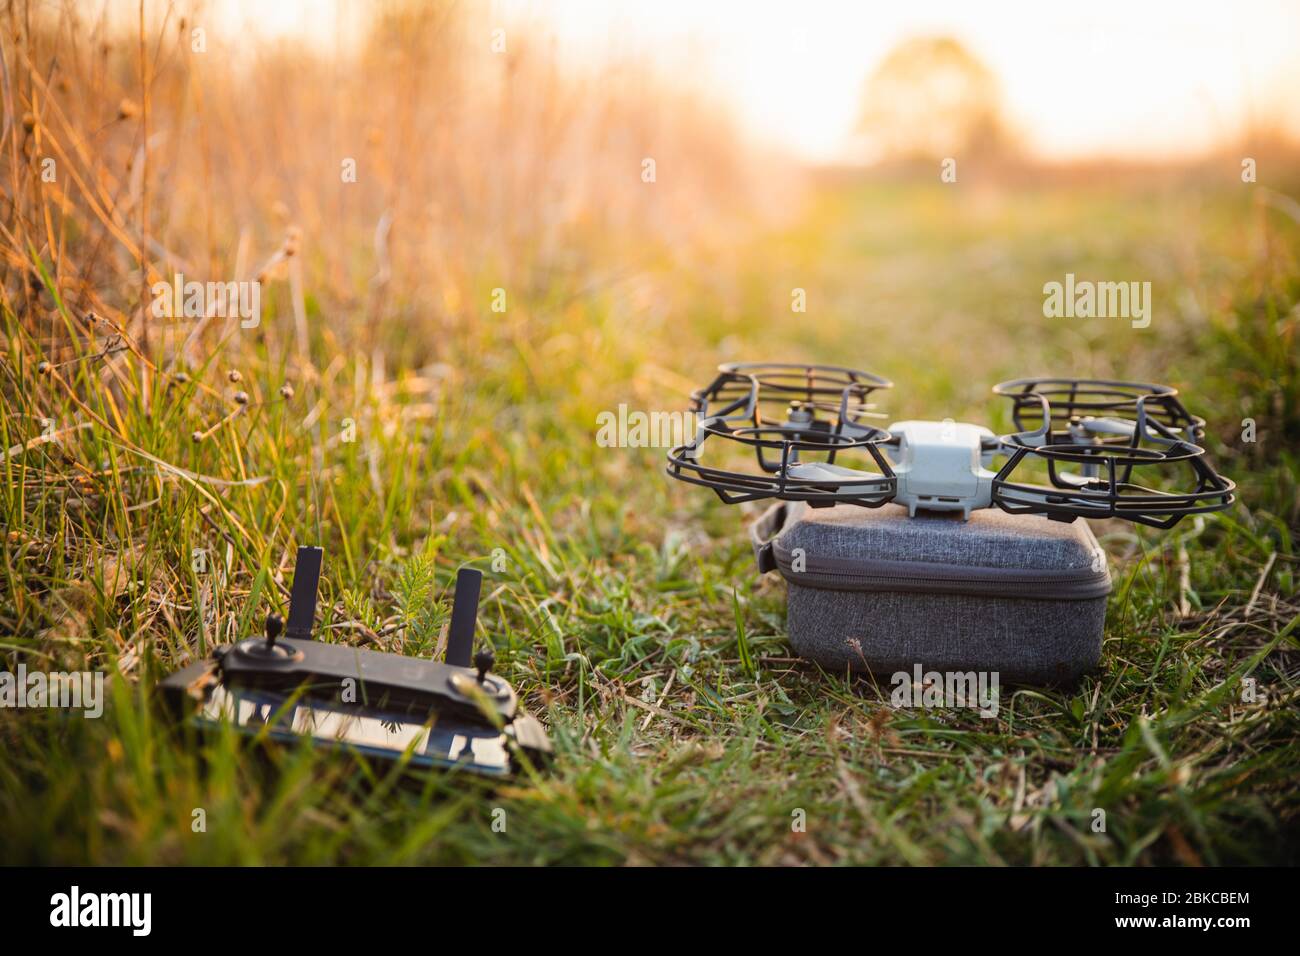 Petit drone avec protection de l'hélice sur boîtier gris avec téléphone de contrôle sur fond vert en été avec lumière chaude au coucher du soleil Banque D'Images